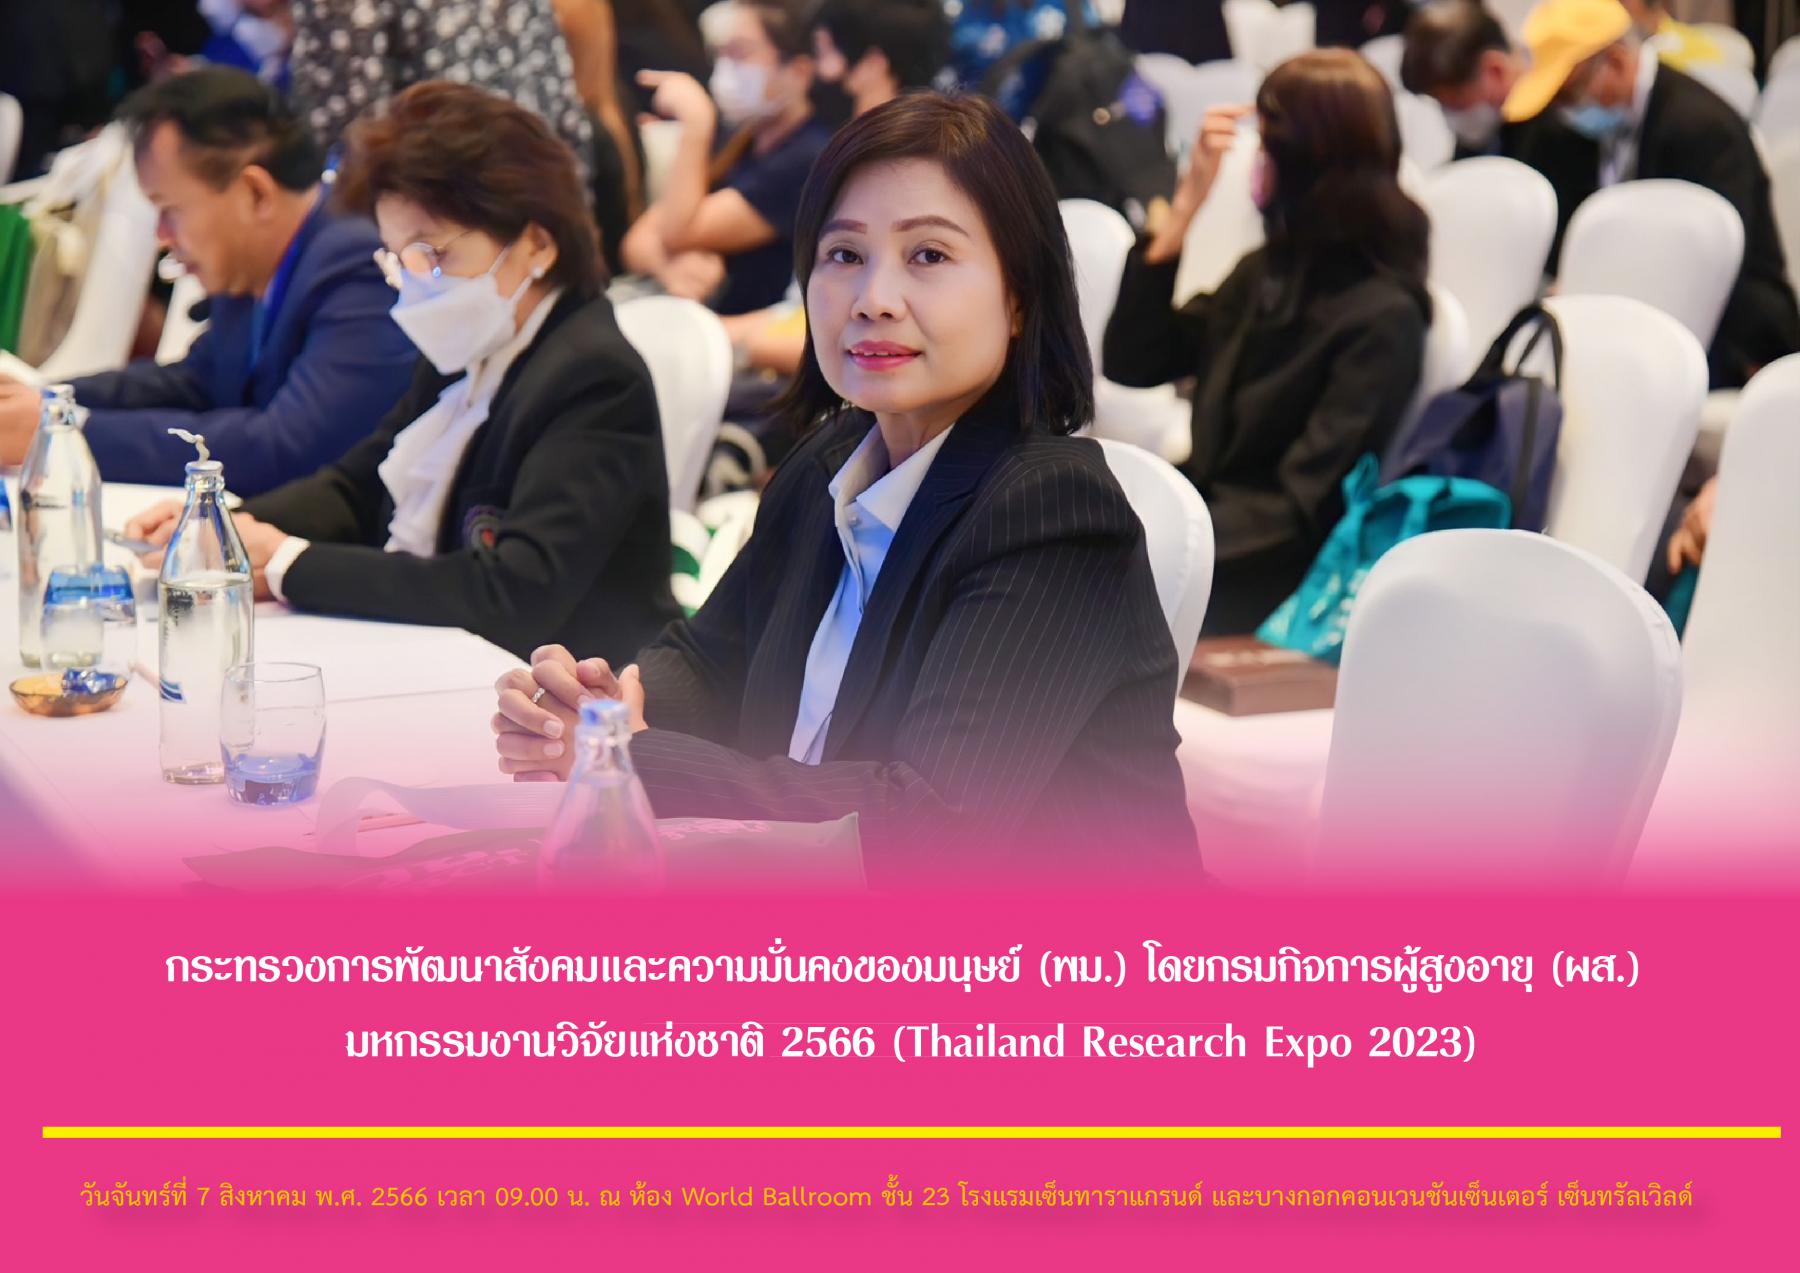 กระทรวงการพัฒนาสังคมและความมั่นคงของมนุษย์ (พม.) โดยกรมกิจการผู้สูงอายุ (ผส.) ร่วมงานมหกรรมงานวิจัยแห่งชาติ 2566 (Thailand Research Expo 2023)